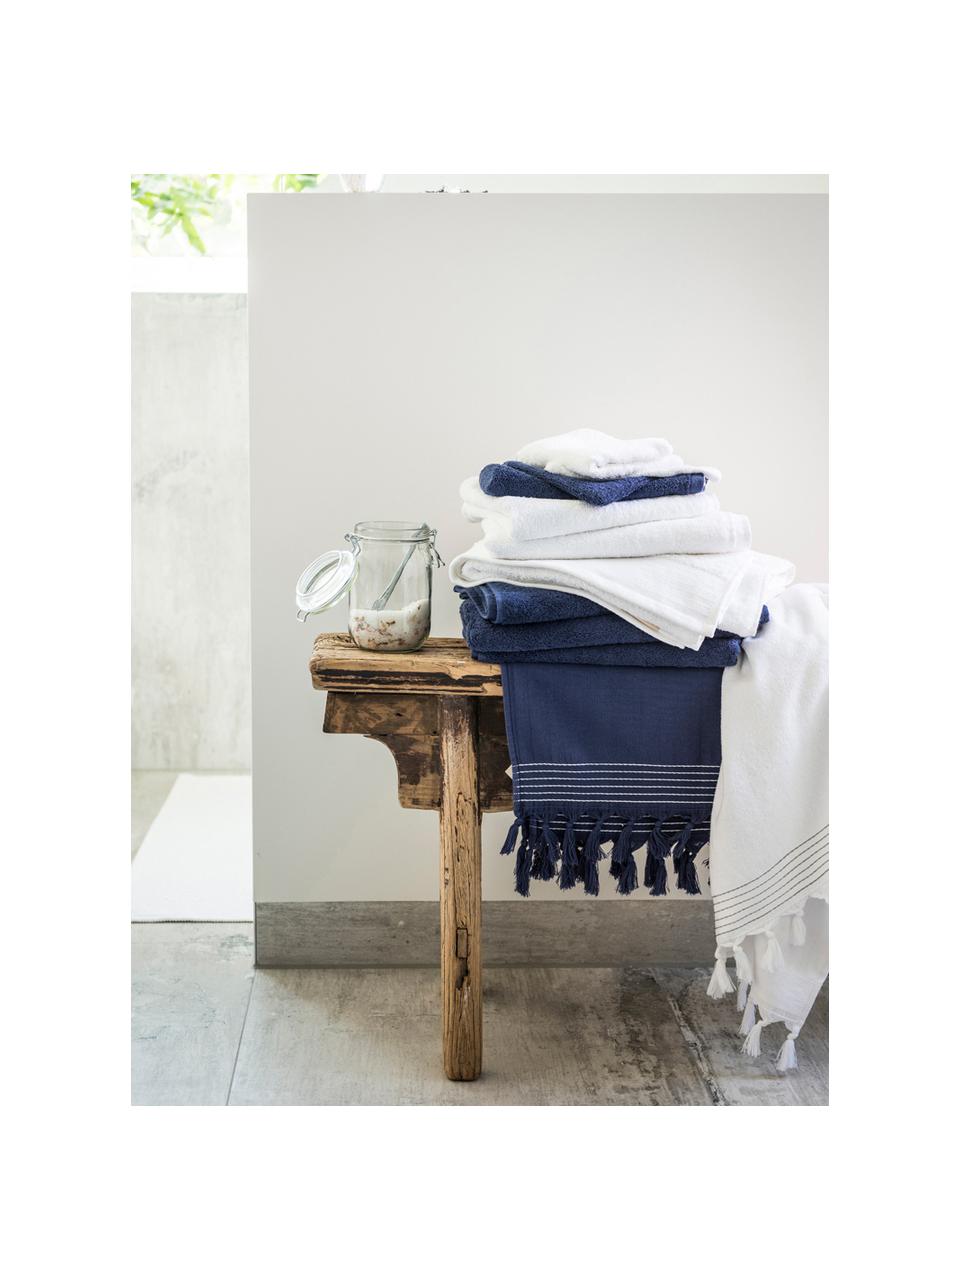 Handtuch Soft Cotton, verschiedene Grössen, Navyblau, Handtuch, B 50 x L 100 cm